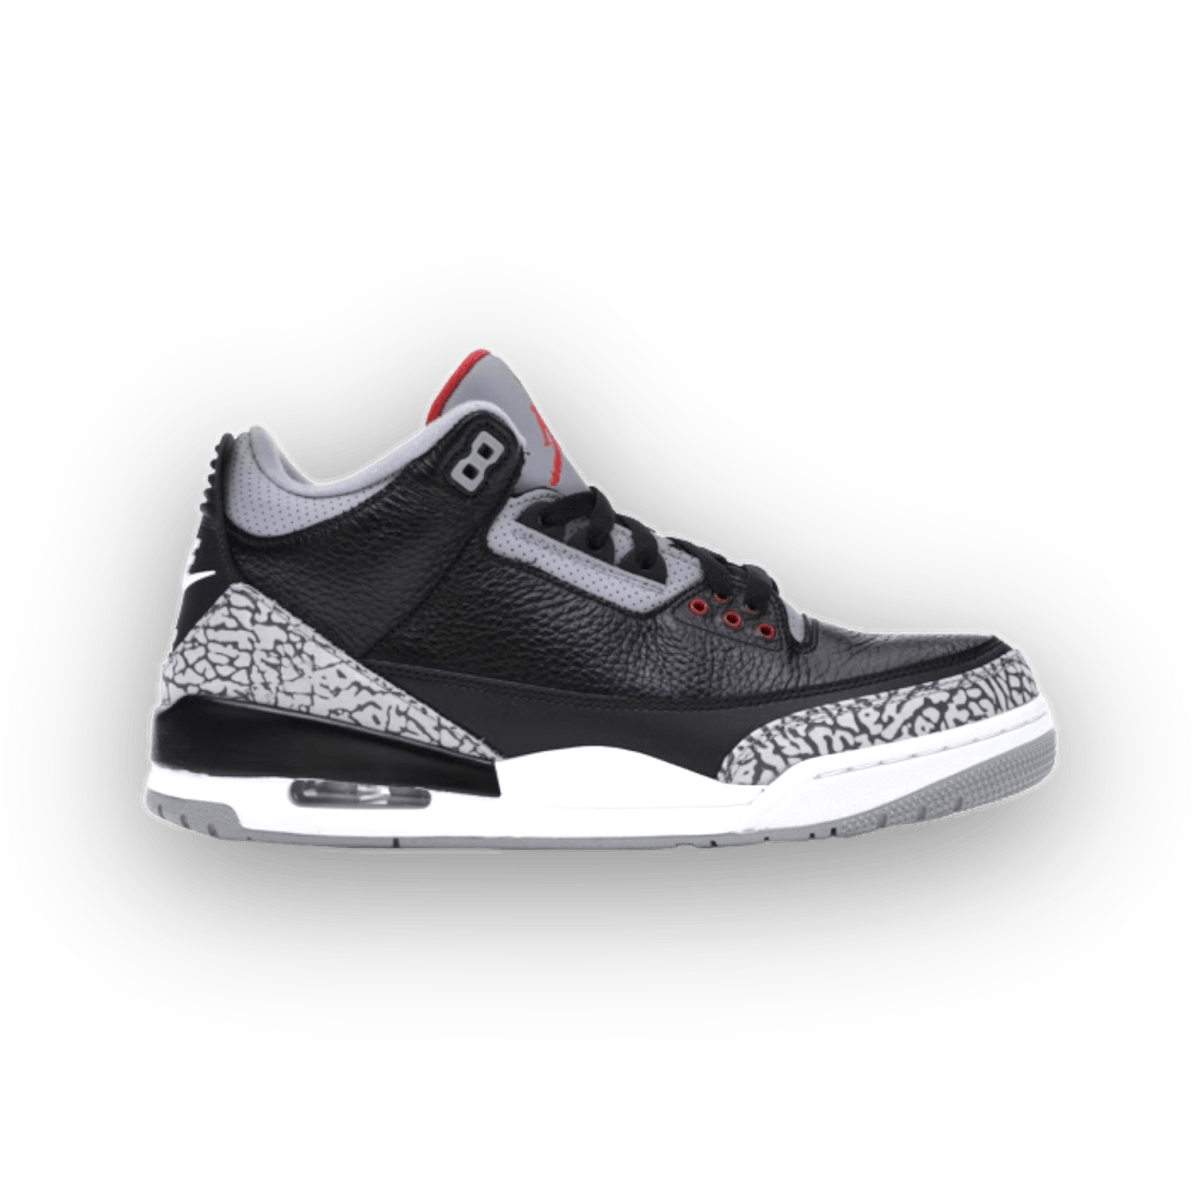 AIR JORDAN 3 RETRO OG 'BLACK CEMENT' 2018 - Mid Sneaker - Jordan - Jawns on Fire